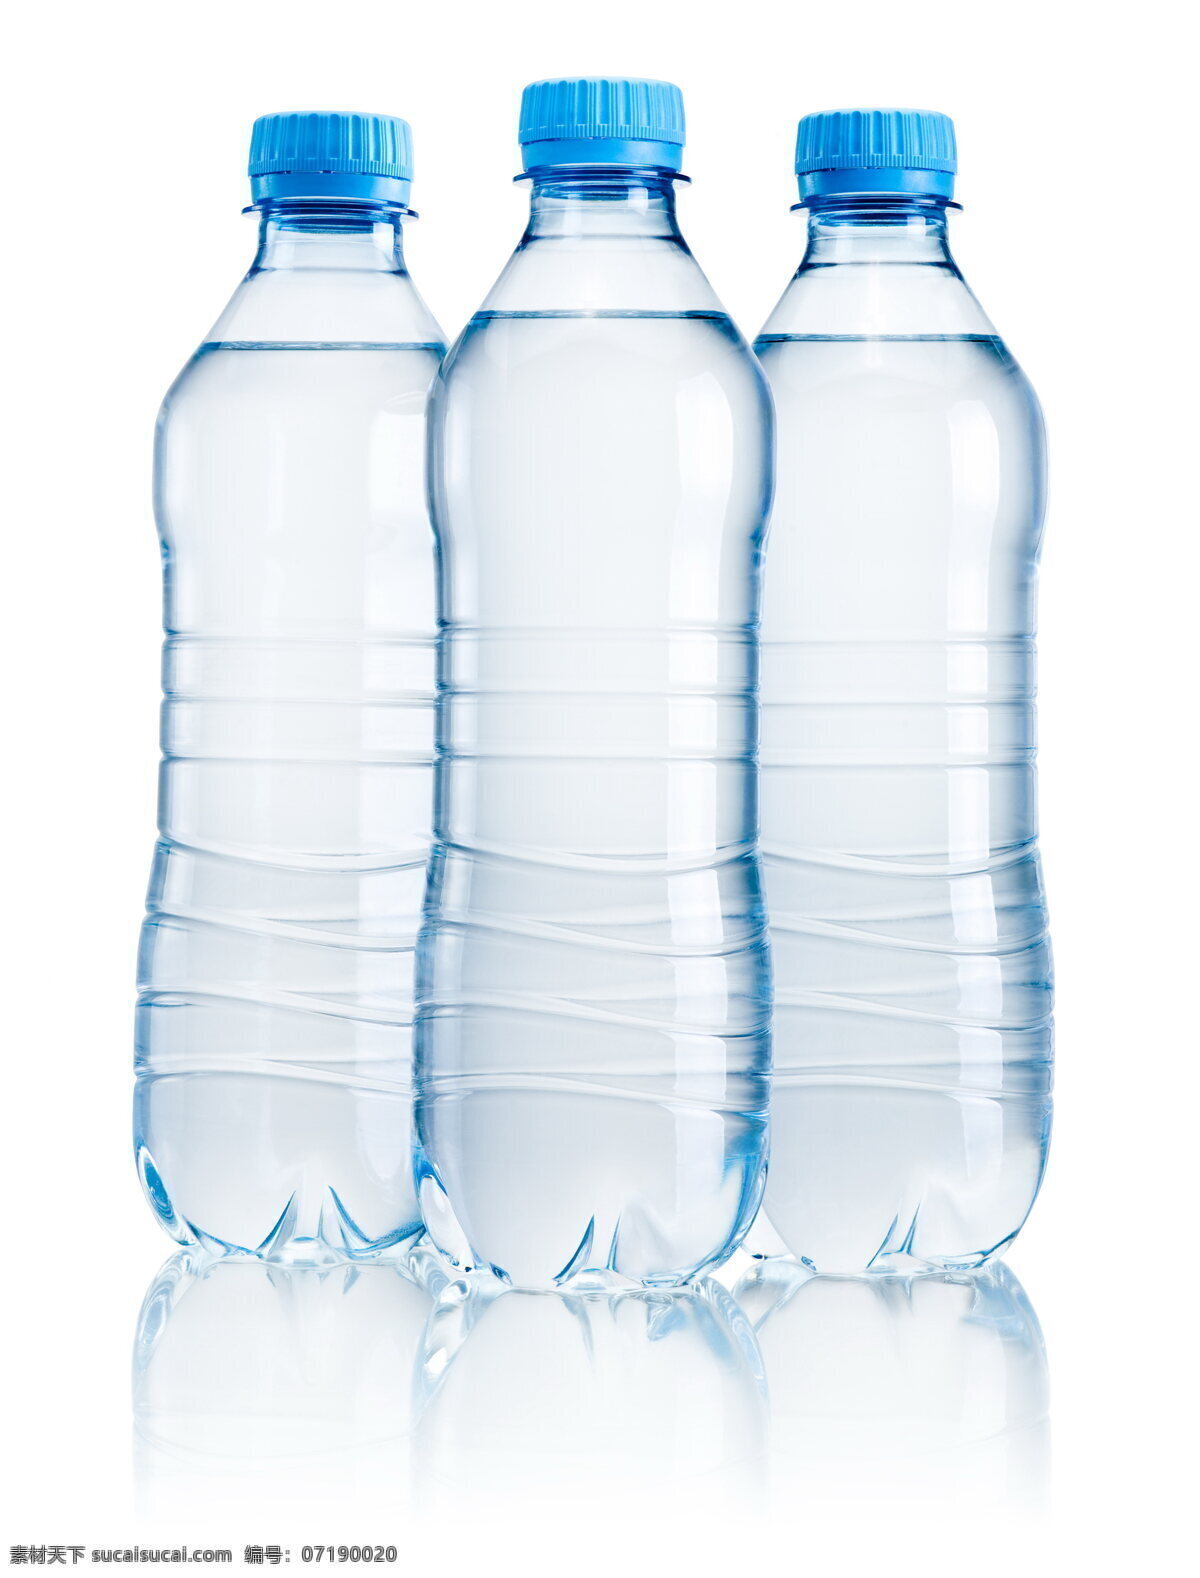 矿泉水 泉水 瓶装水 矿泉水瓶 塑料瓶 瓶子 水 透明 瓶盖 盖子 饮用水 水资源 三瓶 饮料 饮品 果汁 冰饮 牛奶 餐饮美食 饮料酒水